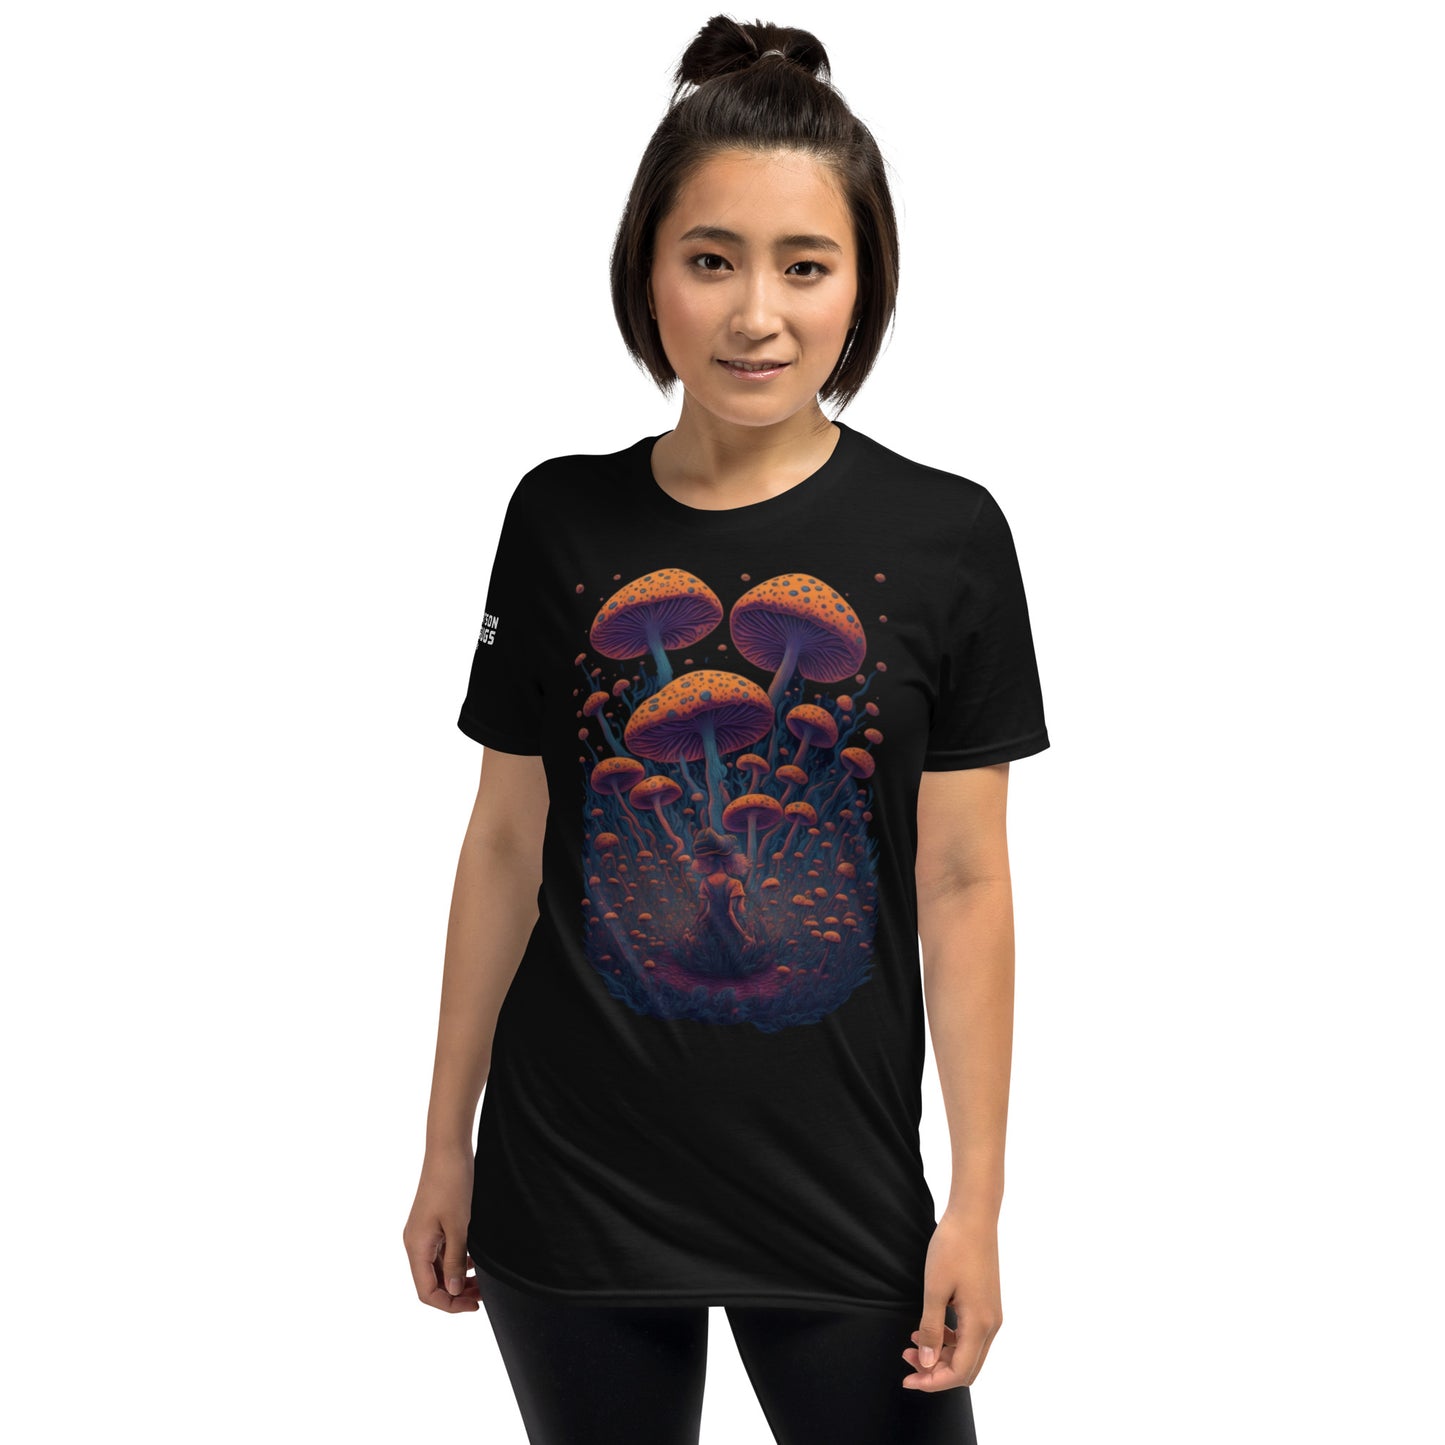 Astronauta psicodélico - Camiseta techno unisex, edición MDMA